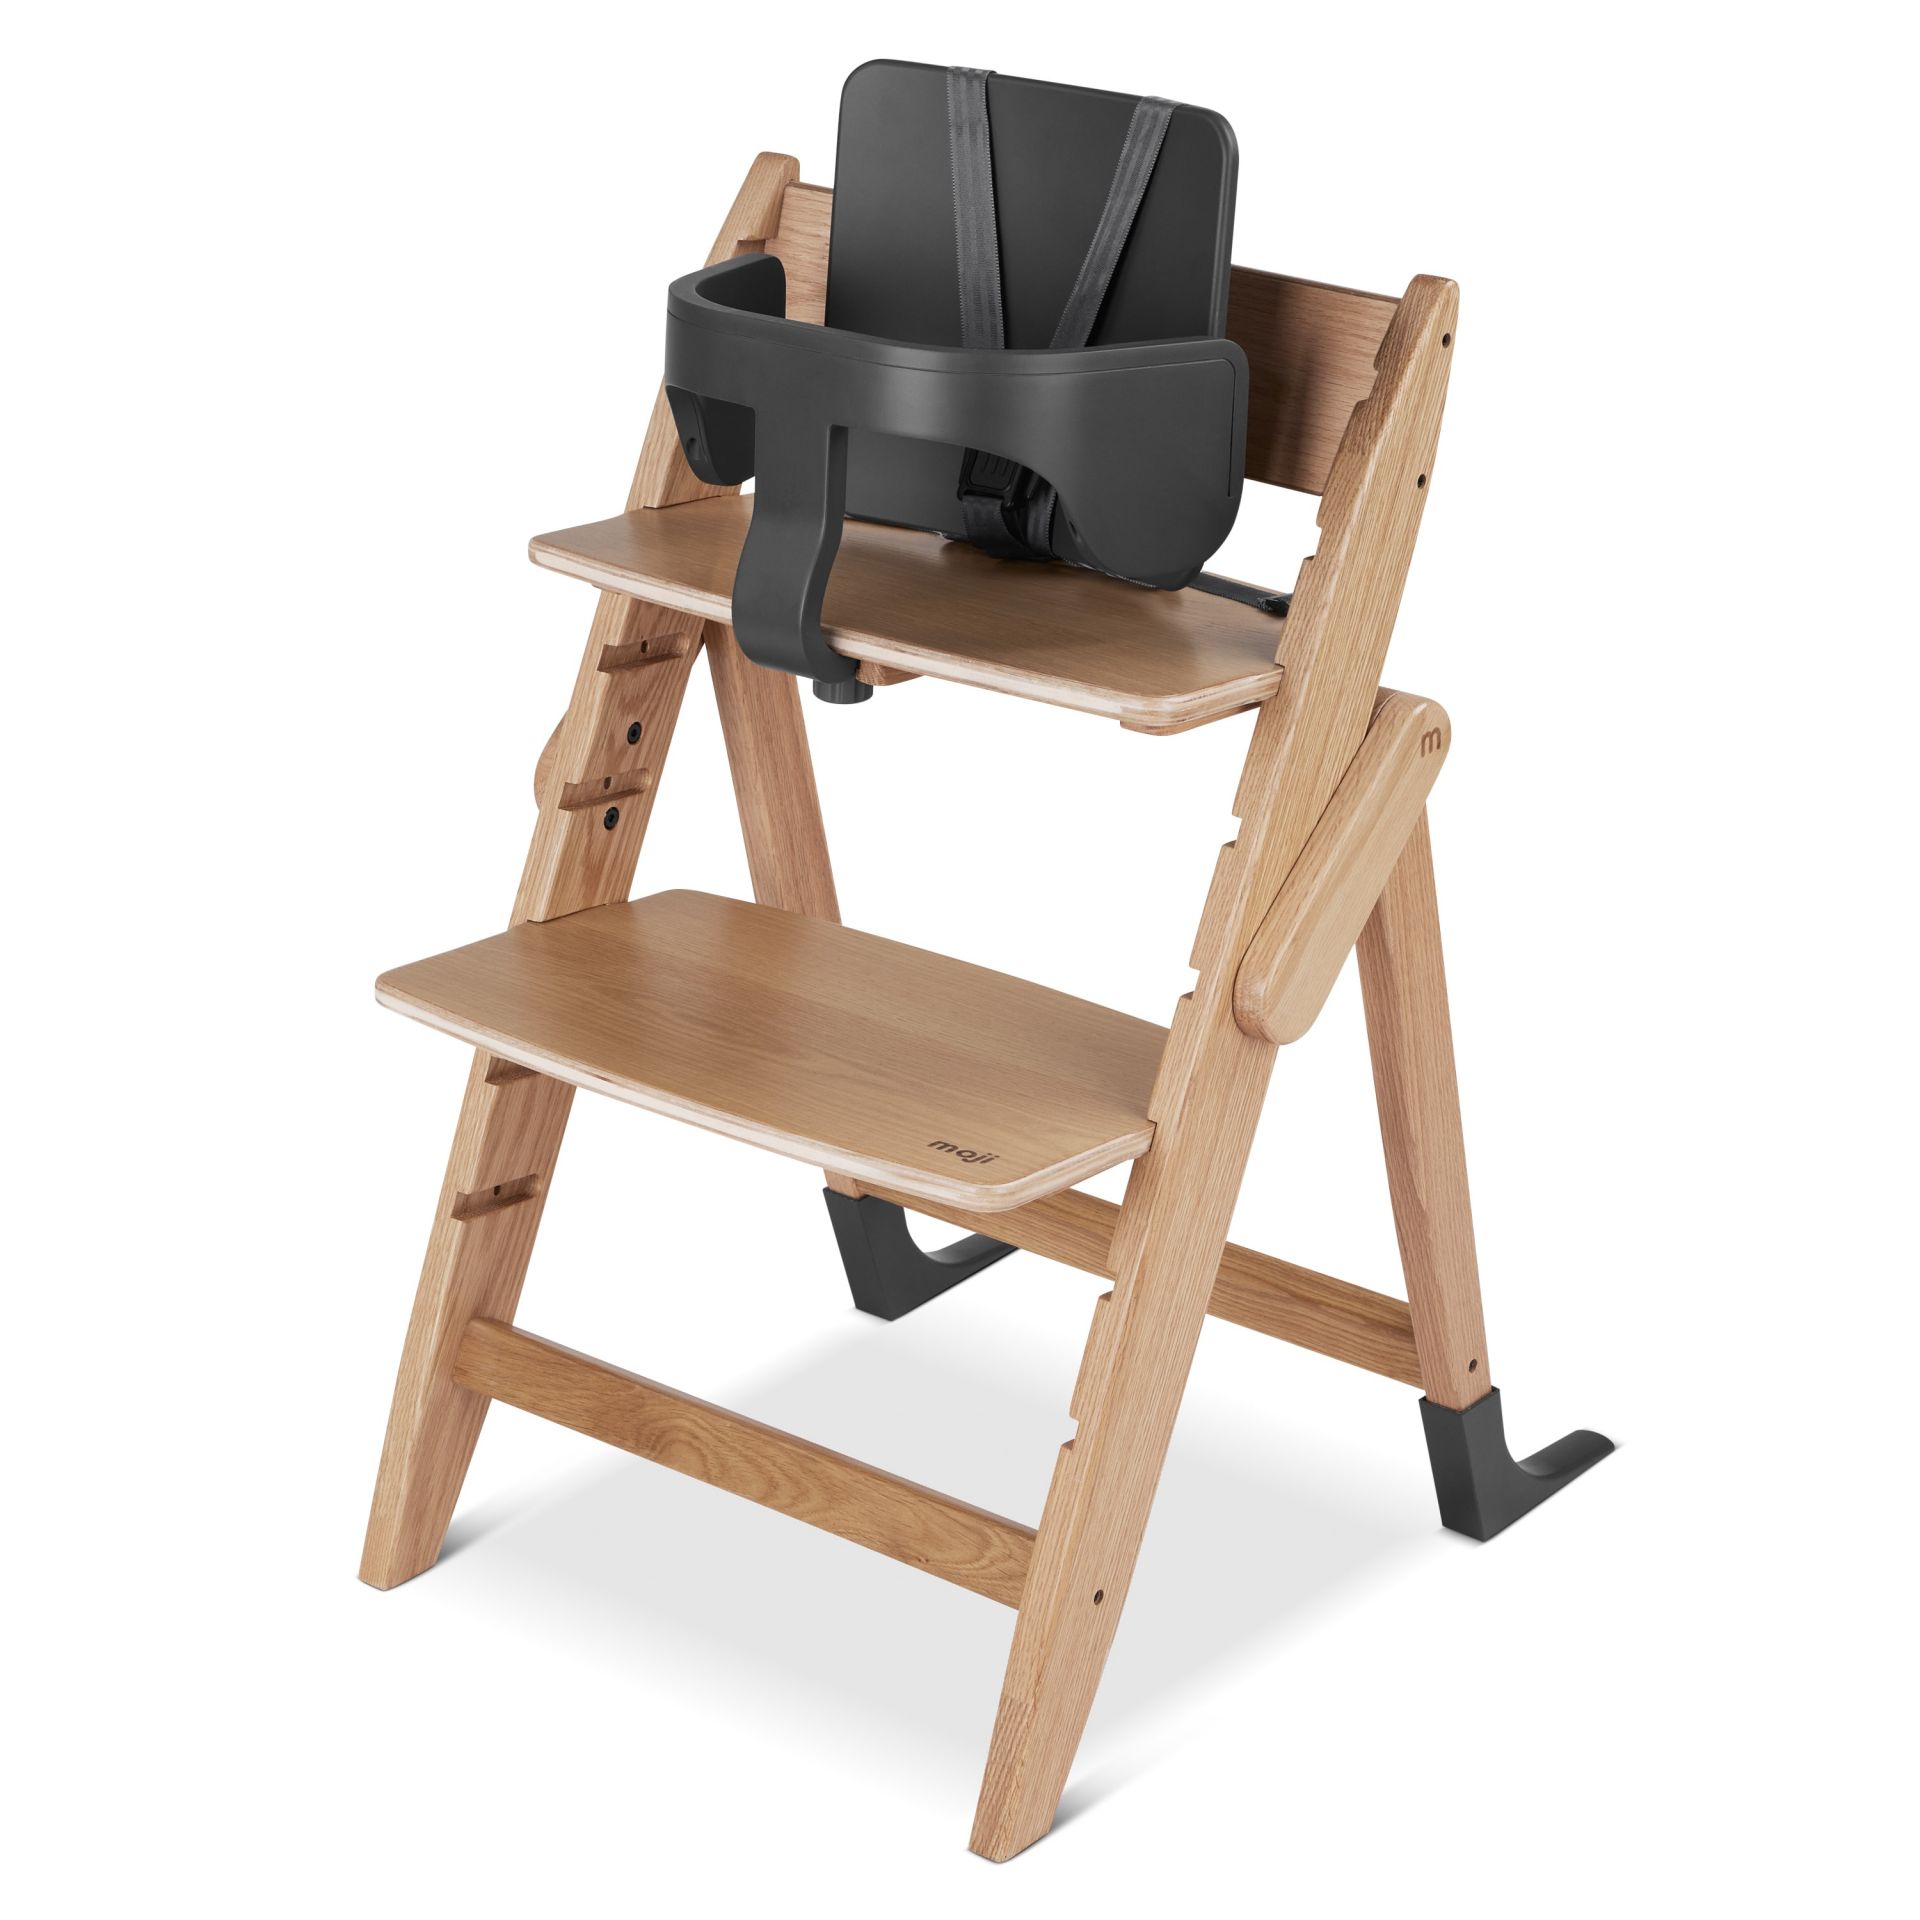 Ремни безопасности Moji by ABC-Design Harness для стульчика Yippy cloud 12003371601 leander ремни безопасности для стульчика